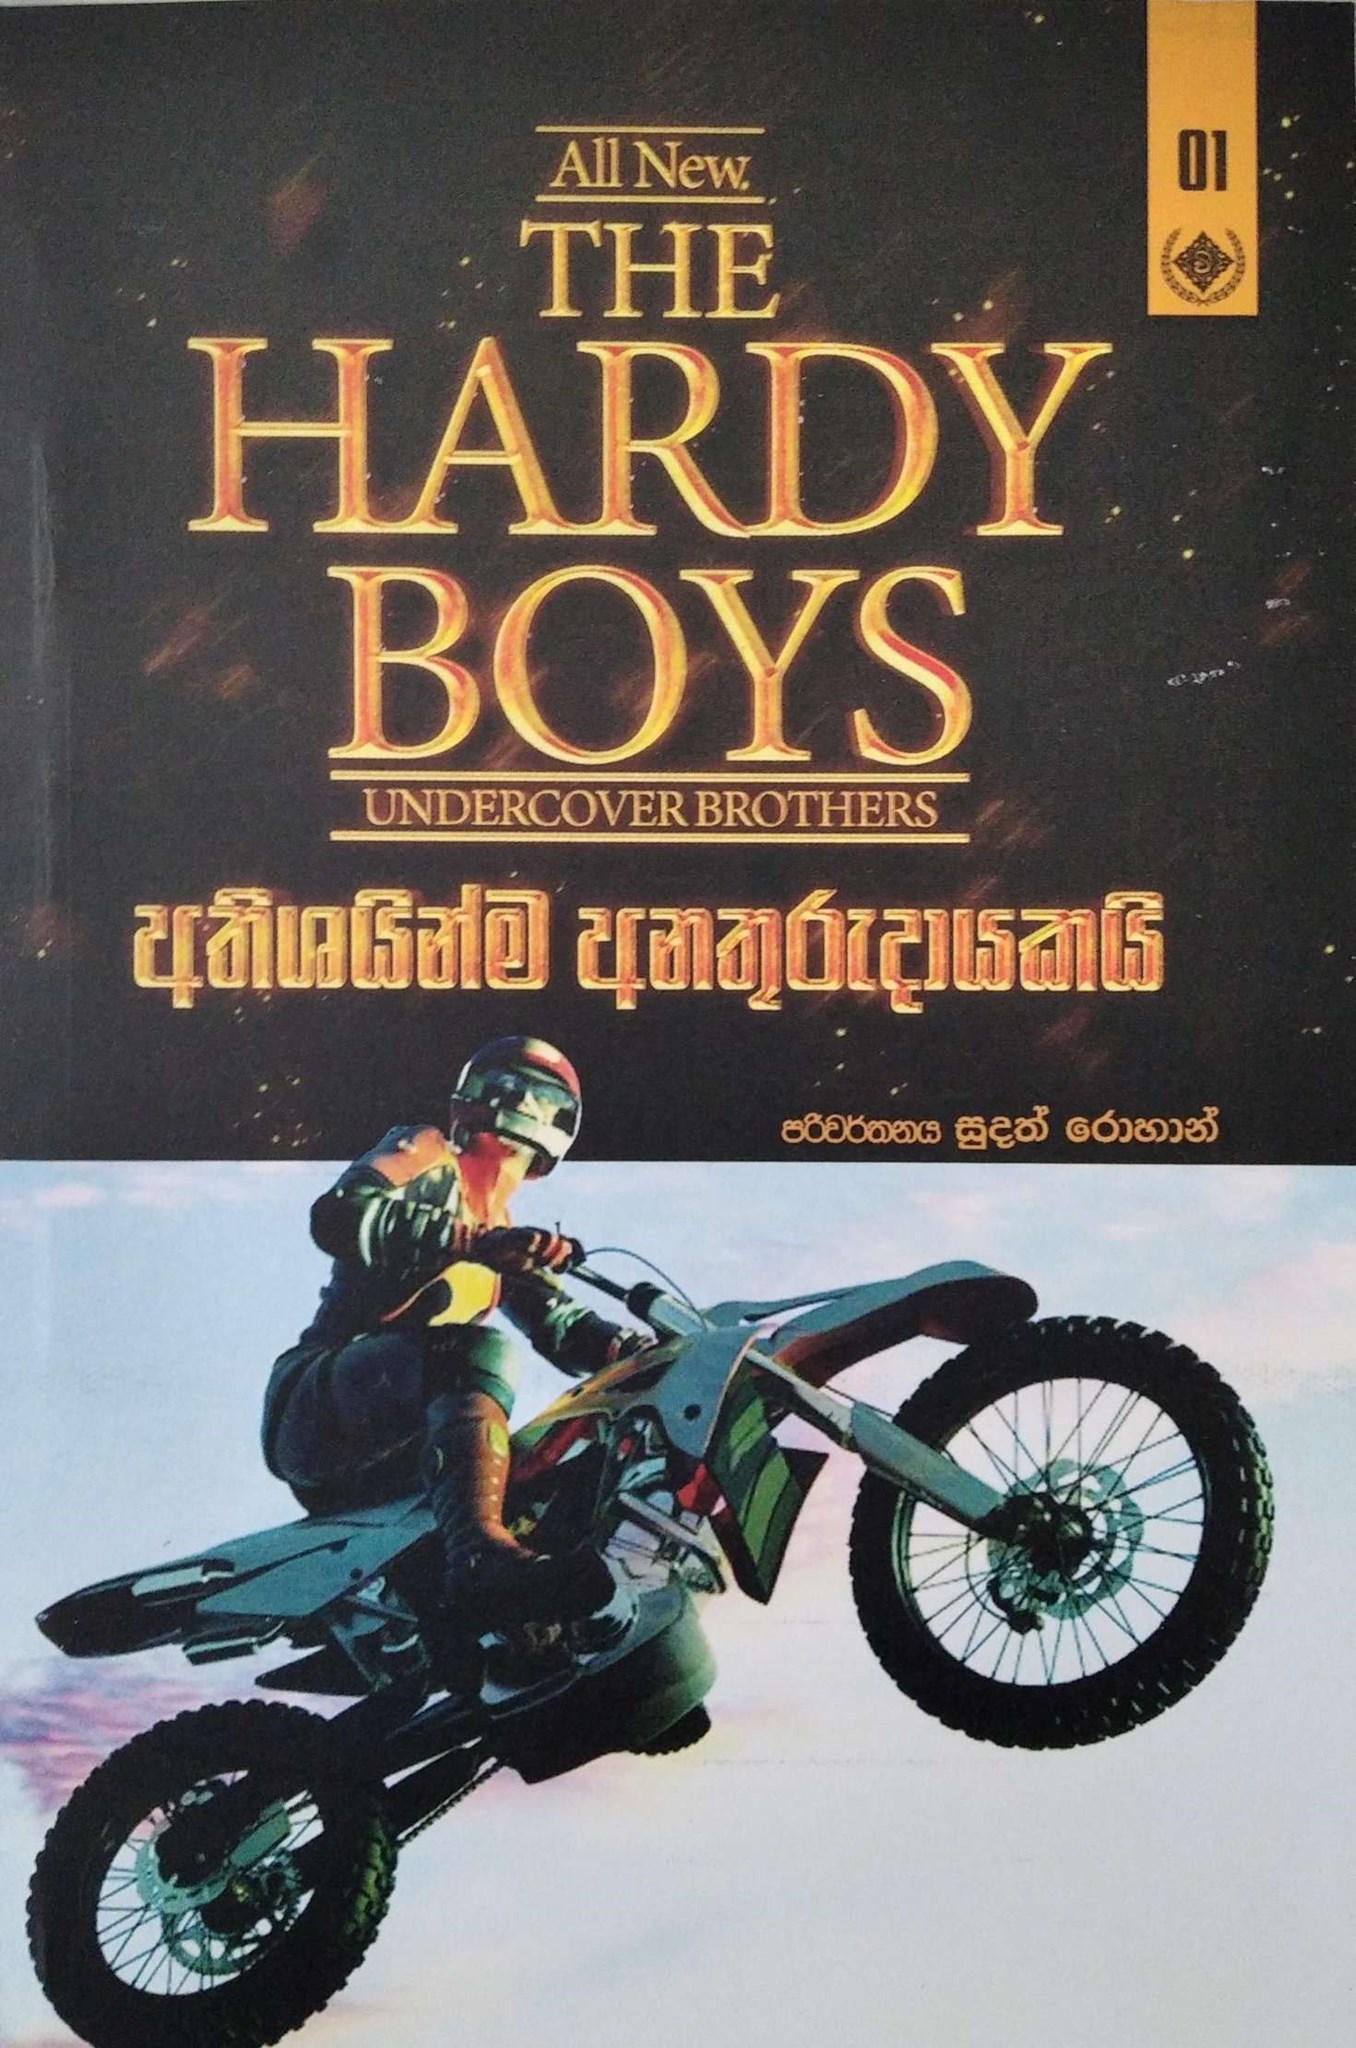 තරුණ වීරයෝ  1 (අතිශයින්ම අනතුරුදායකයි) -  The Hardy Boys 1